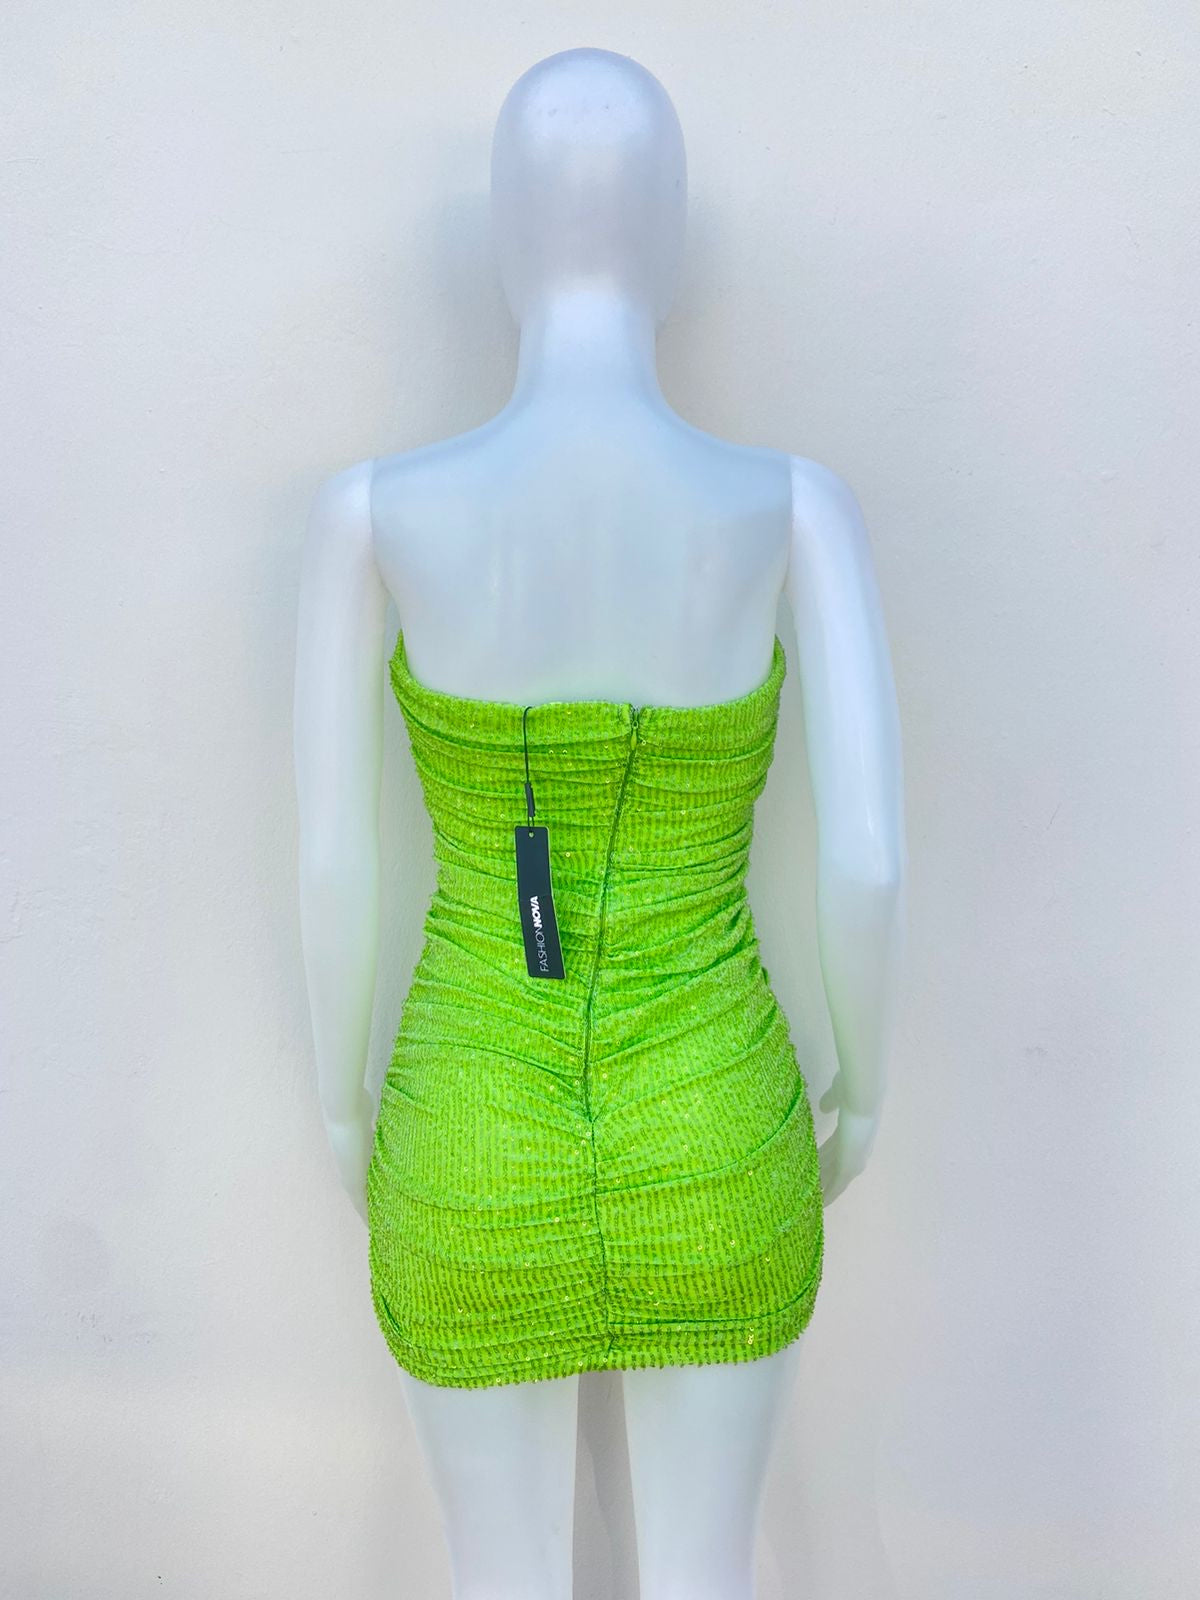 Vestido FASHION NOVA original, esstraple estilo corset verde con lentejuelas.